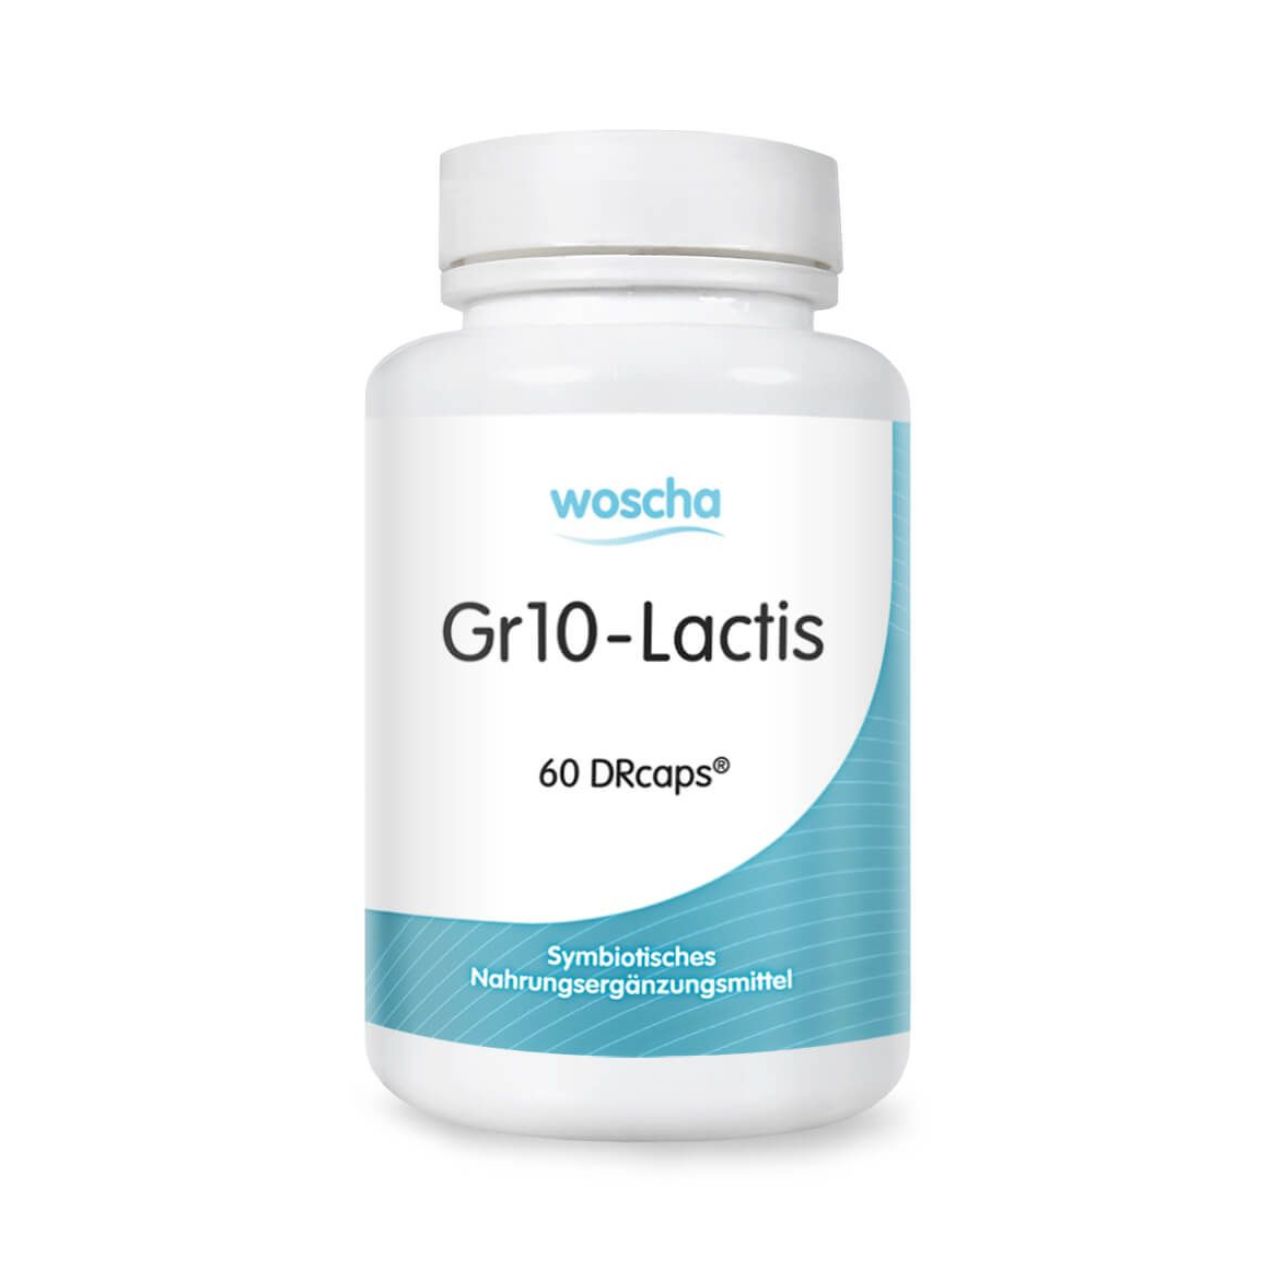 Woscha GR10-Lactis von podo medi beinhaltet 60 DRcaps